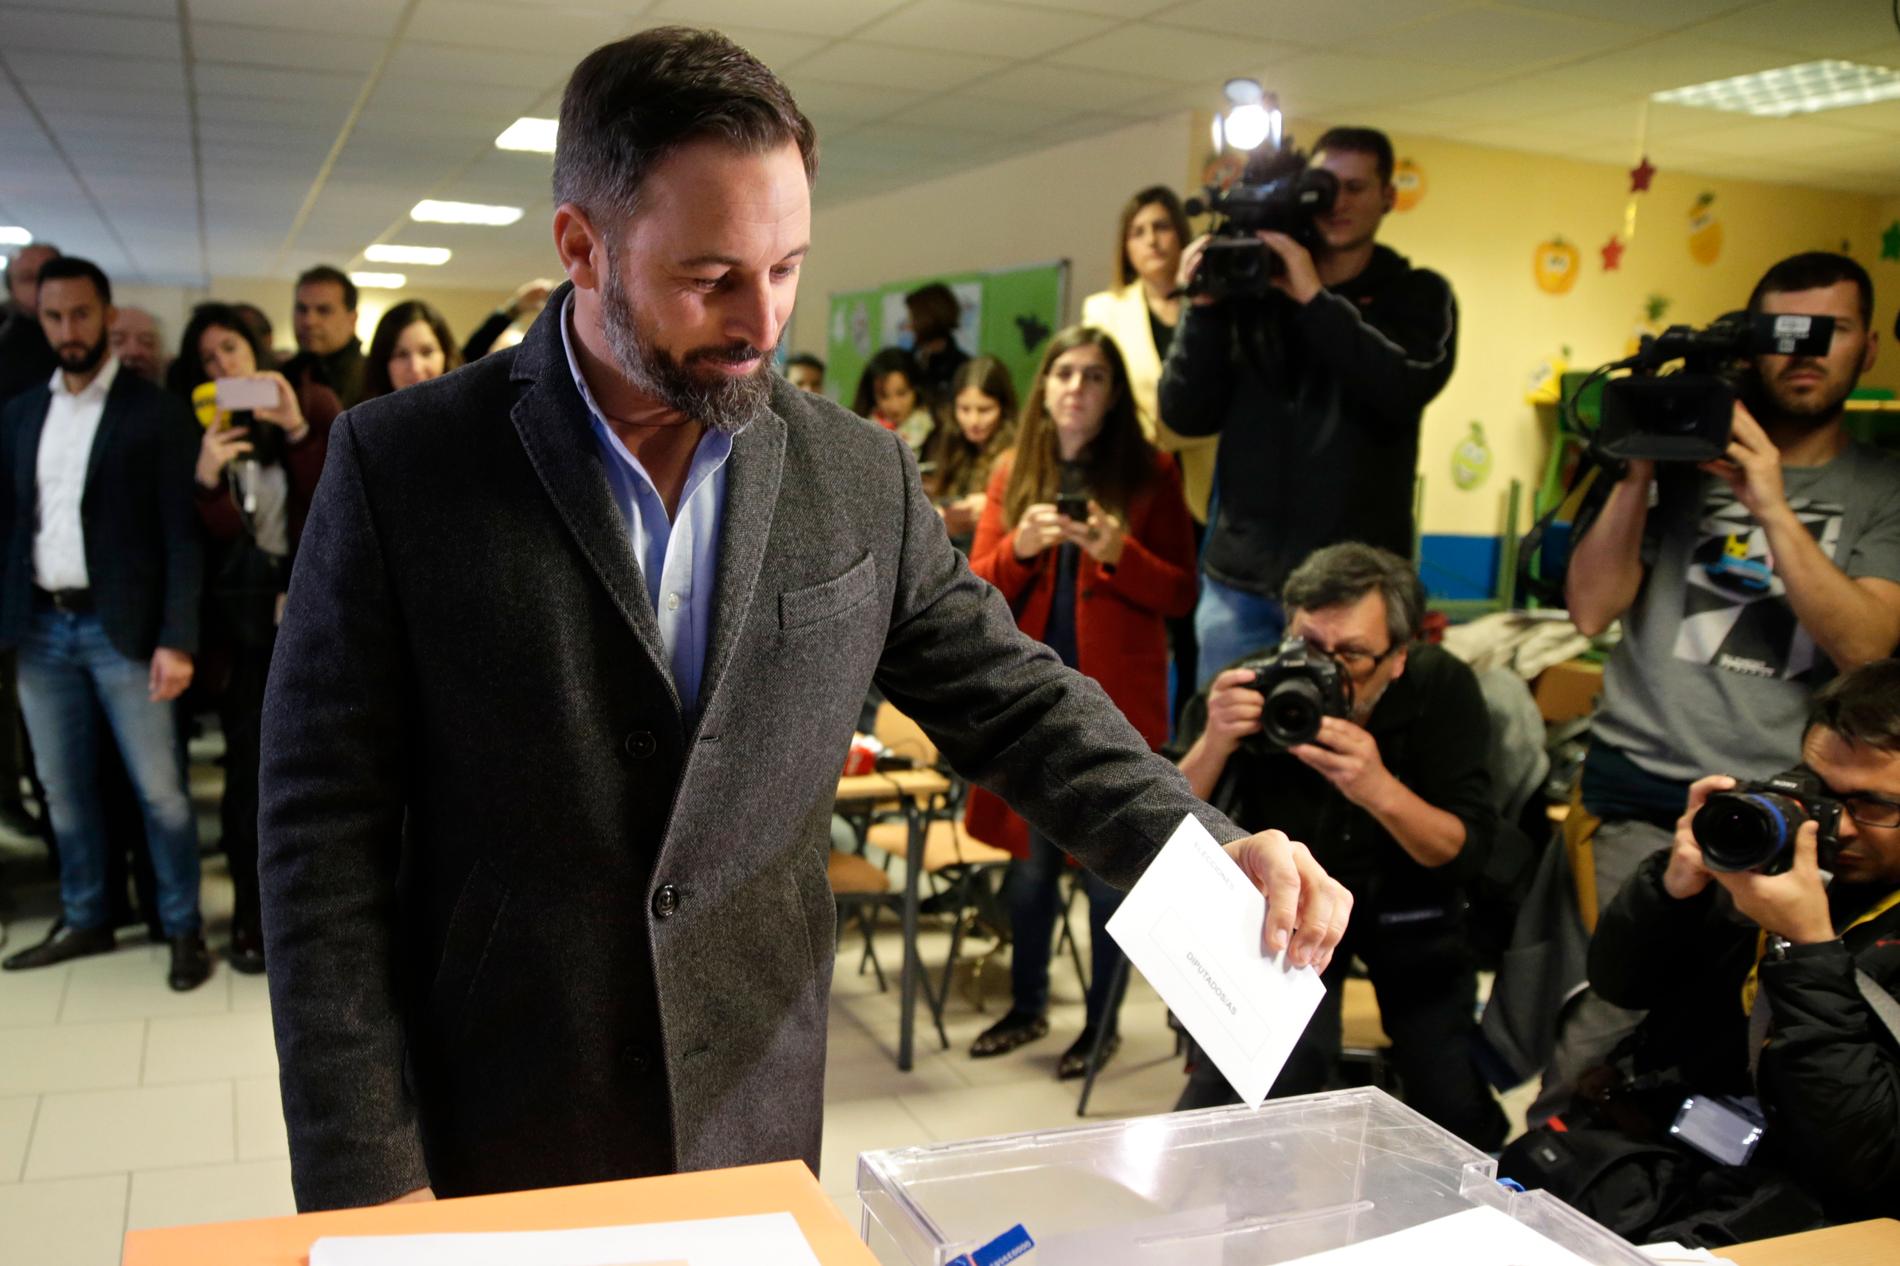 Santiago Abascal, som leder ytterhögerpartiet Vox, kan blir den store segerherren i söndagens spanska nyval. Här röstar han i Madrid.